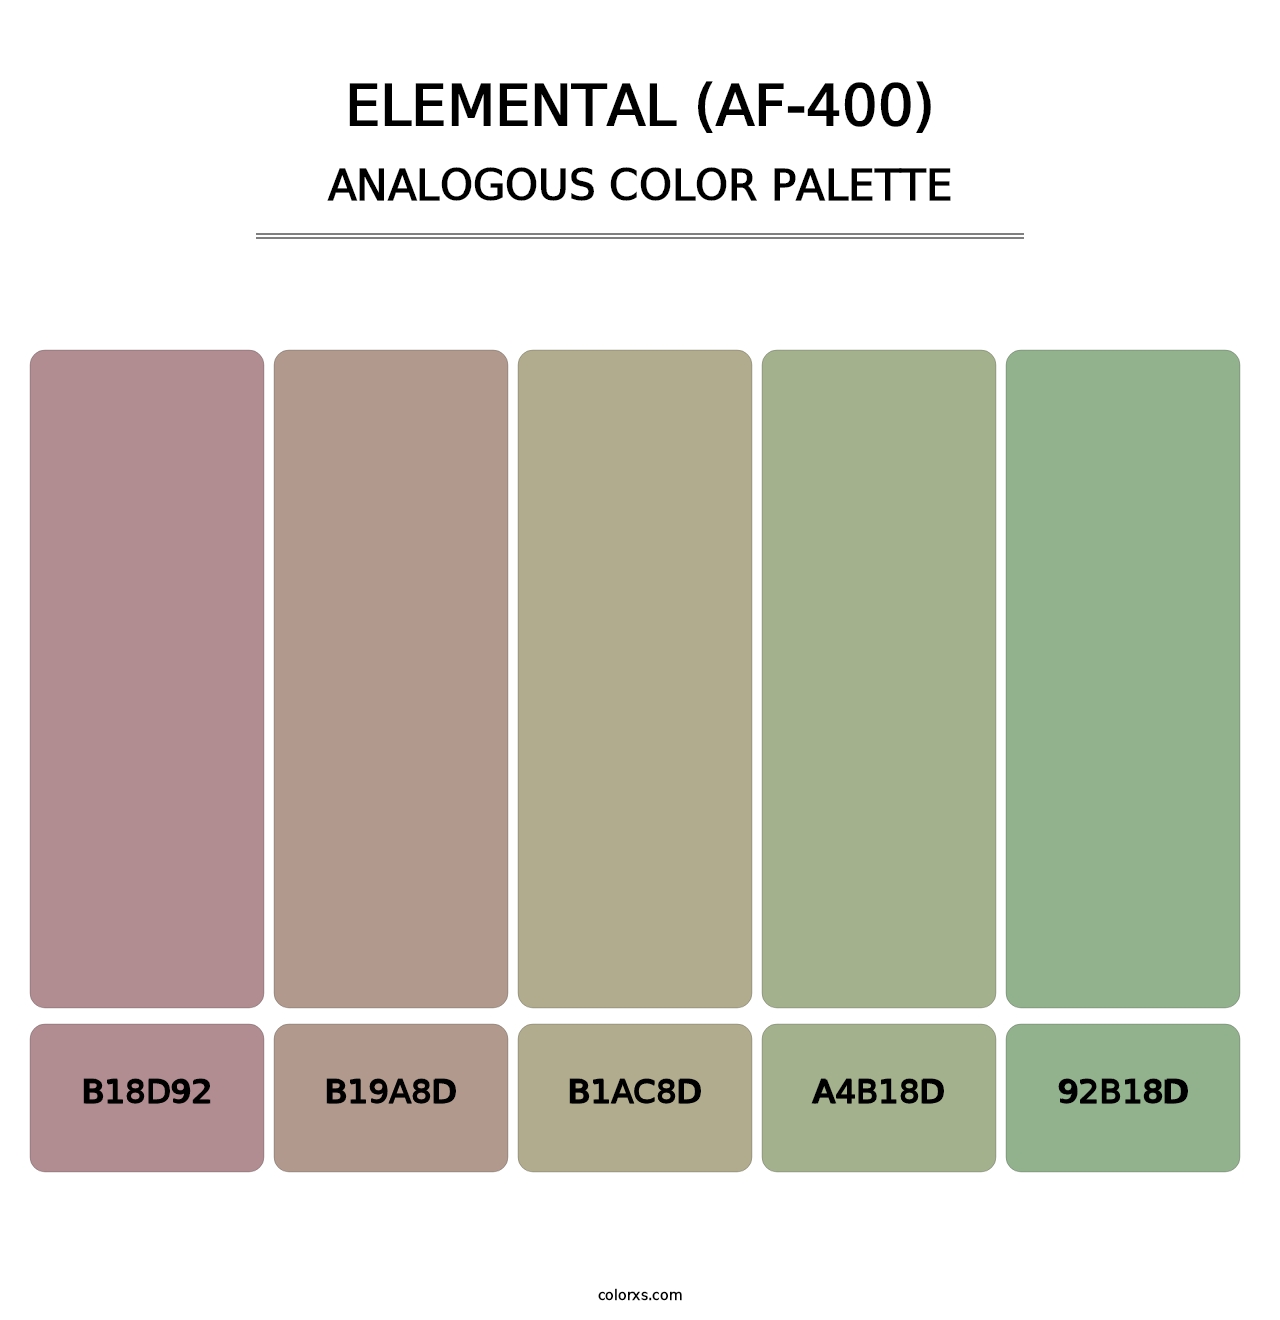 Elemental (AF-400) - Analogous Color Palette